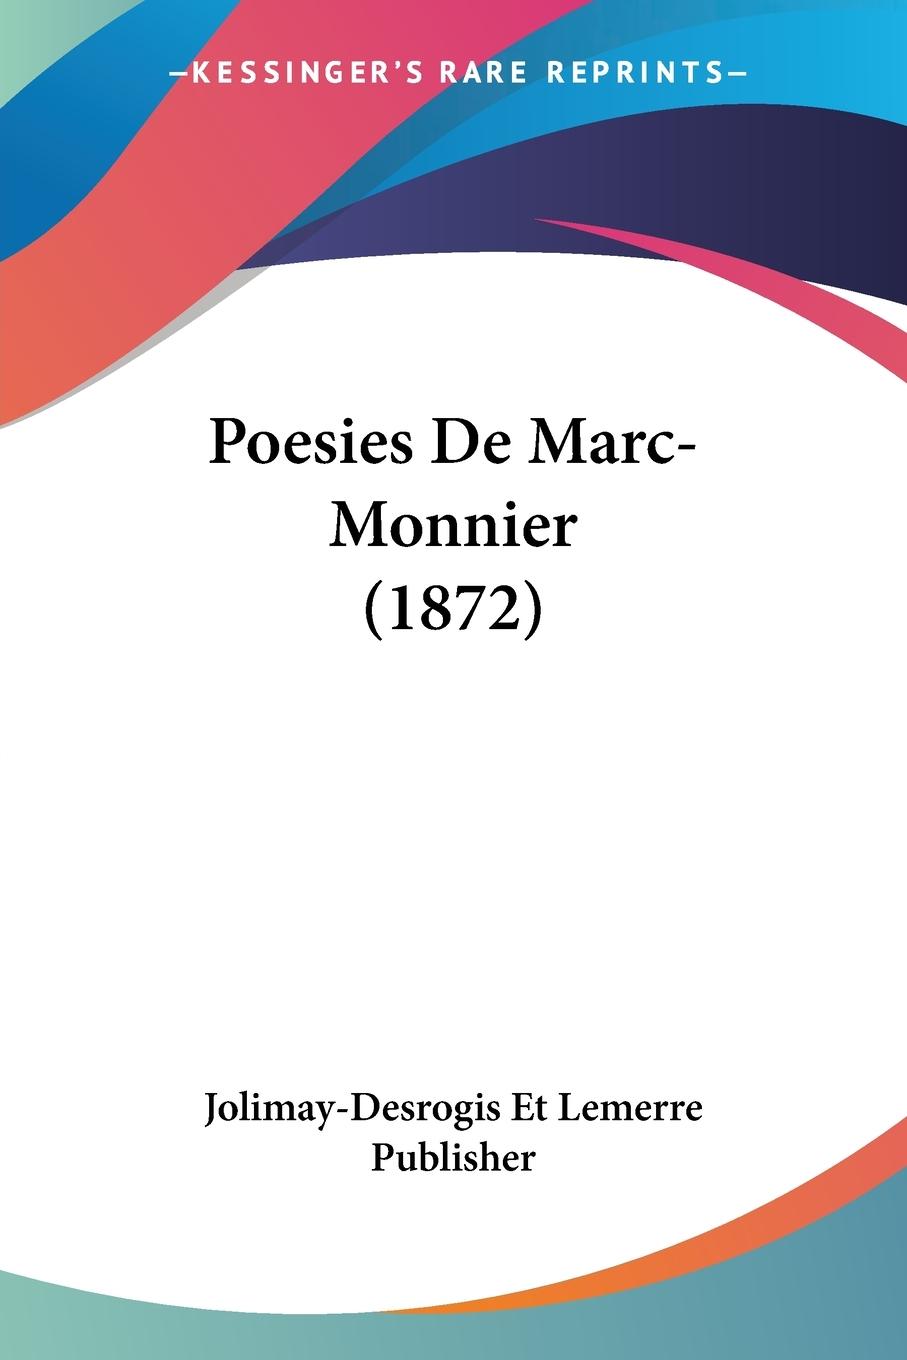 Poesies De Marc-Monnier (1872) - Jolimay-Desrogis Et Lemerre Publisher